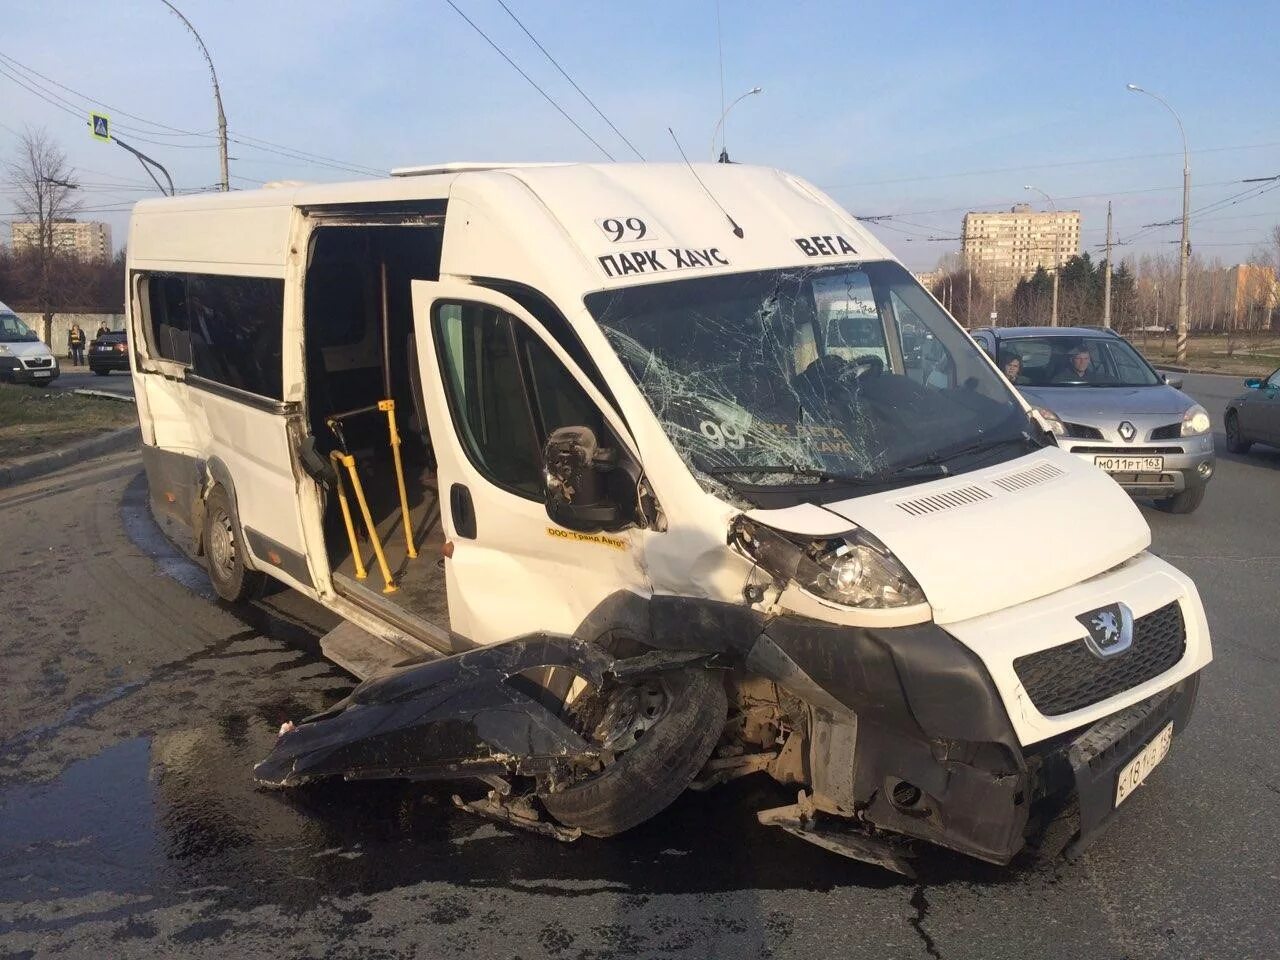 63 ру тольятти. Авария автобуса в Тольятти. Разбитый микроавтобус.